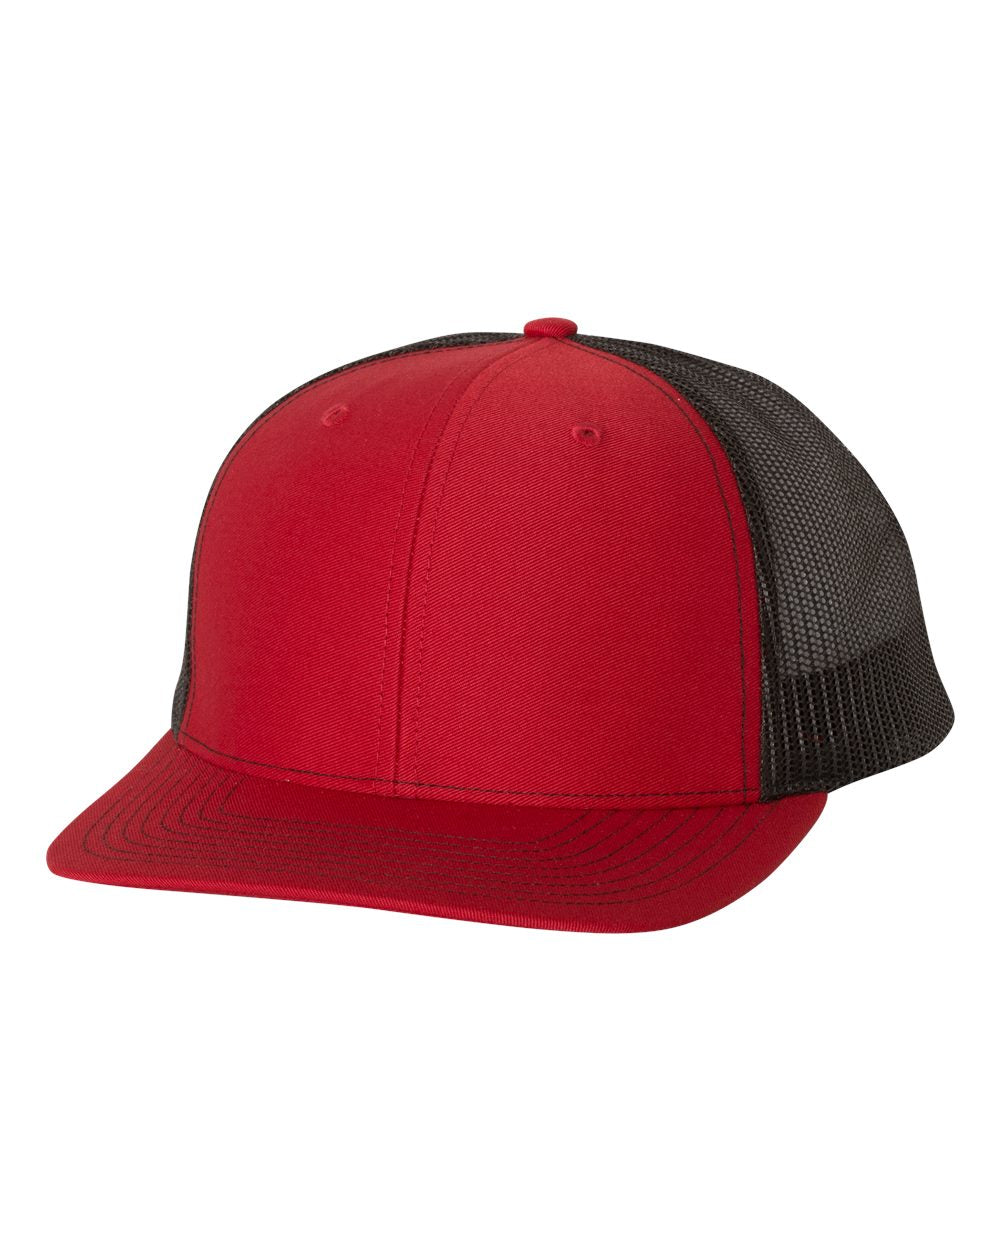 richardson cap red black